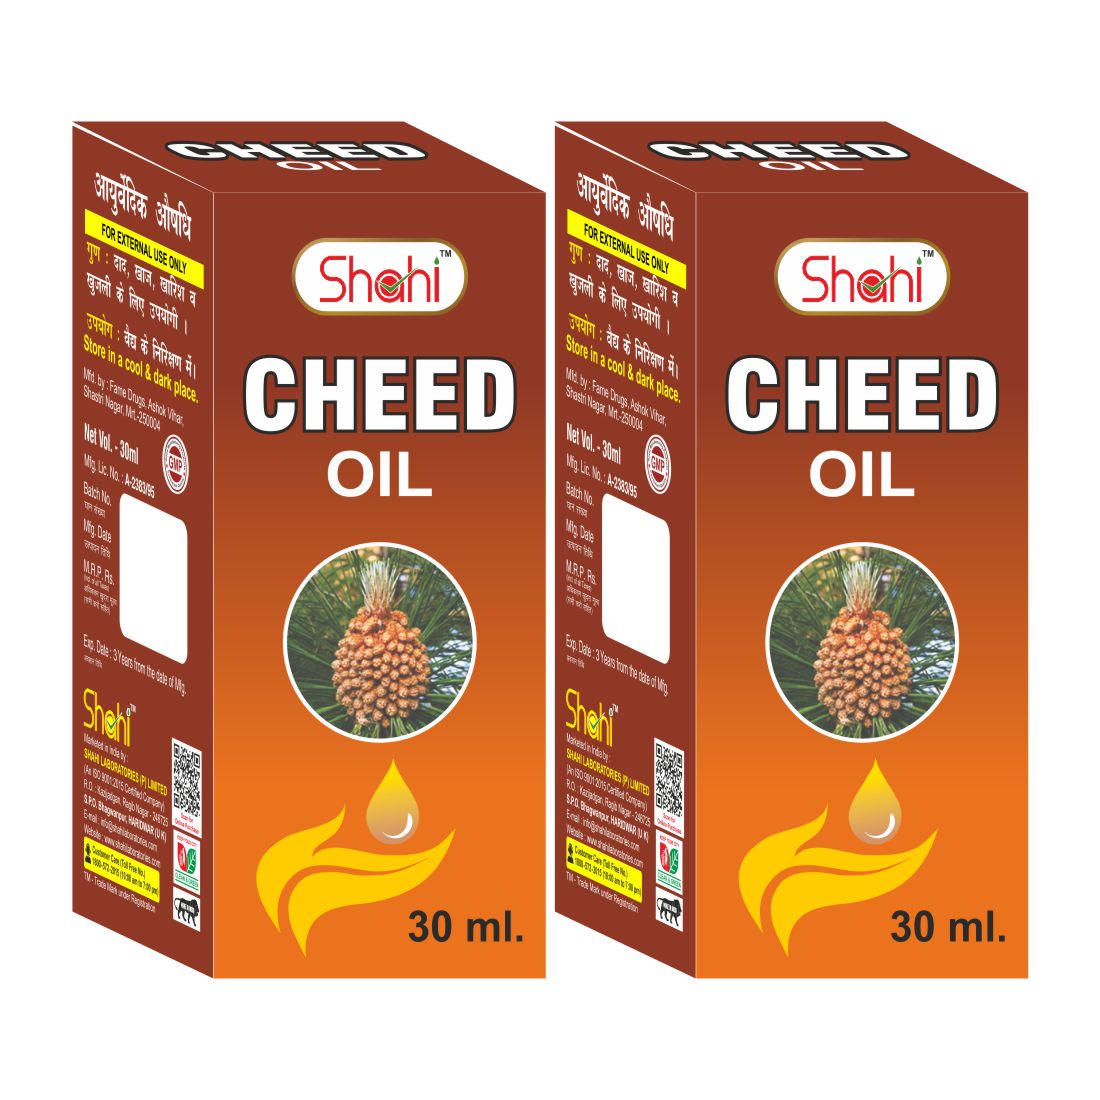 Shahi Cheed Oil 30ml